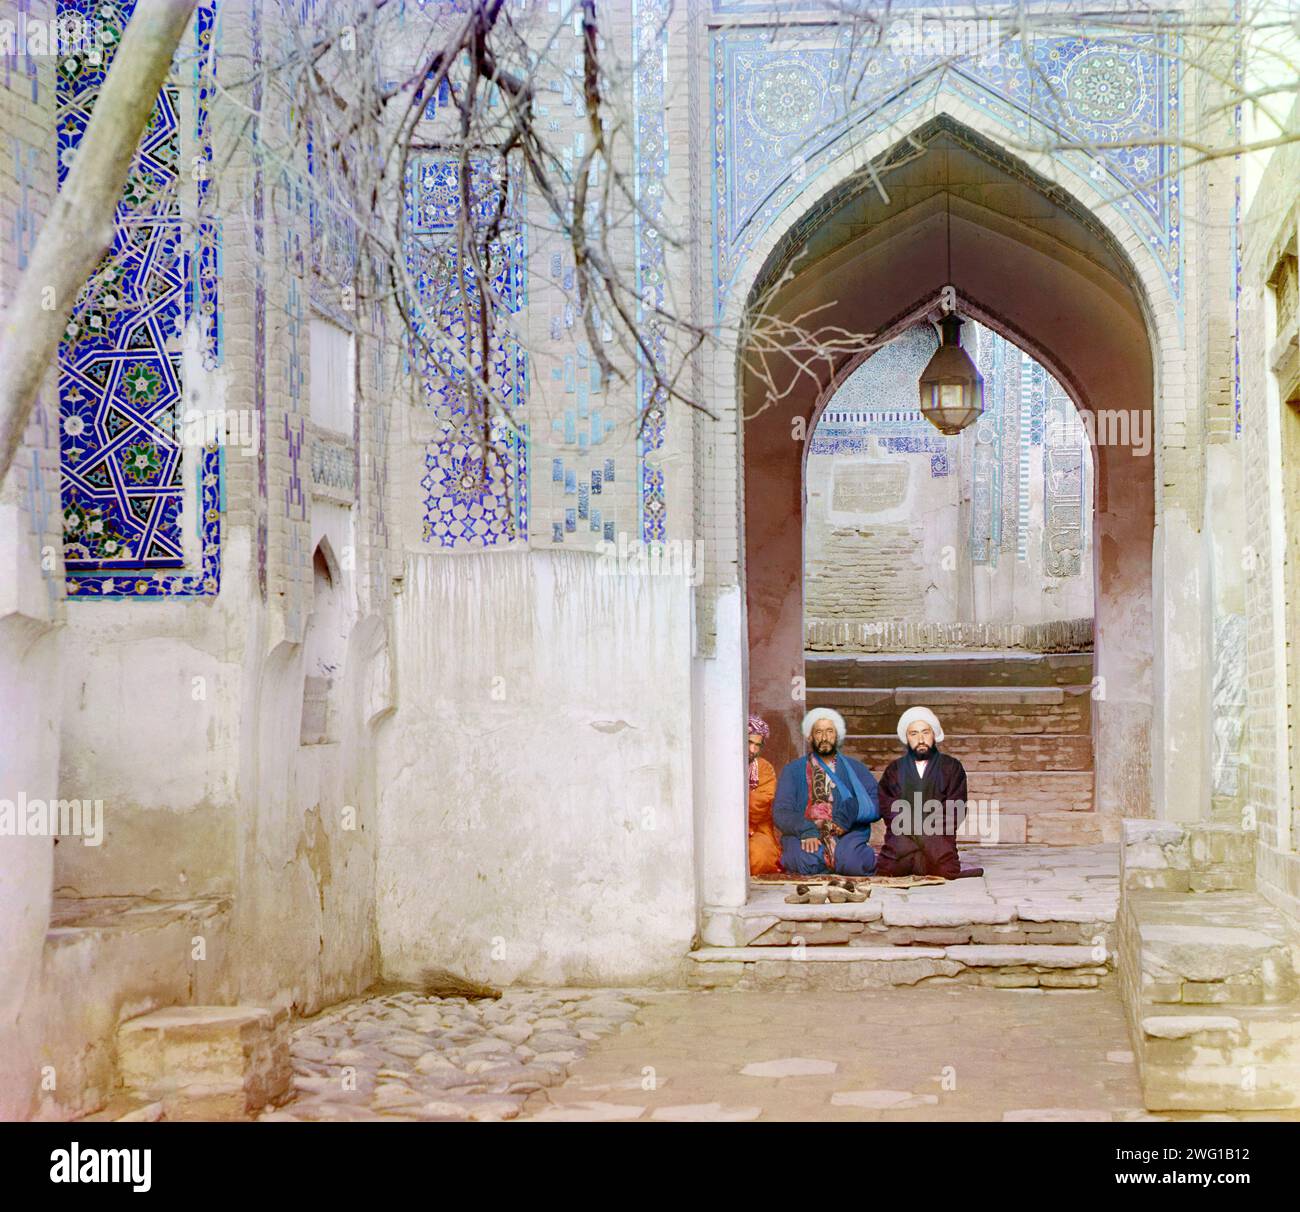 Am Eingang zum oberen Chartak (Baldachin) von Shakh-i Zindeh, Samarkand, zwischen 1905 und 1915. Männer saßen unter einem Bogen im Shakh-i Zindeh (Shah-i-Zinda) Mausoleum Komplex in Samarkand. Einer der Männer hat seinen Arm in einer Schlinge. Stockfoto